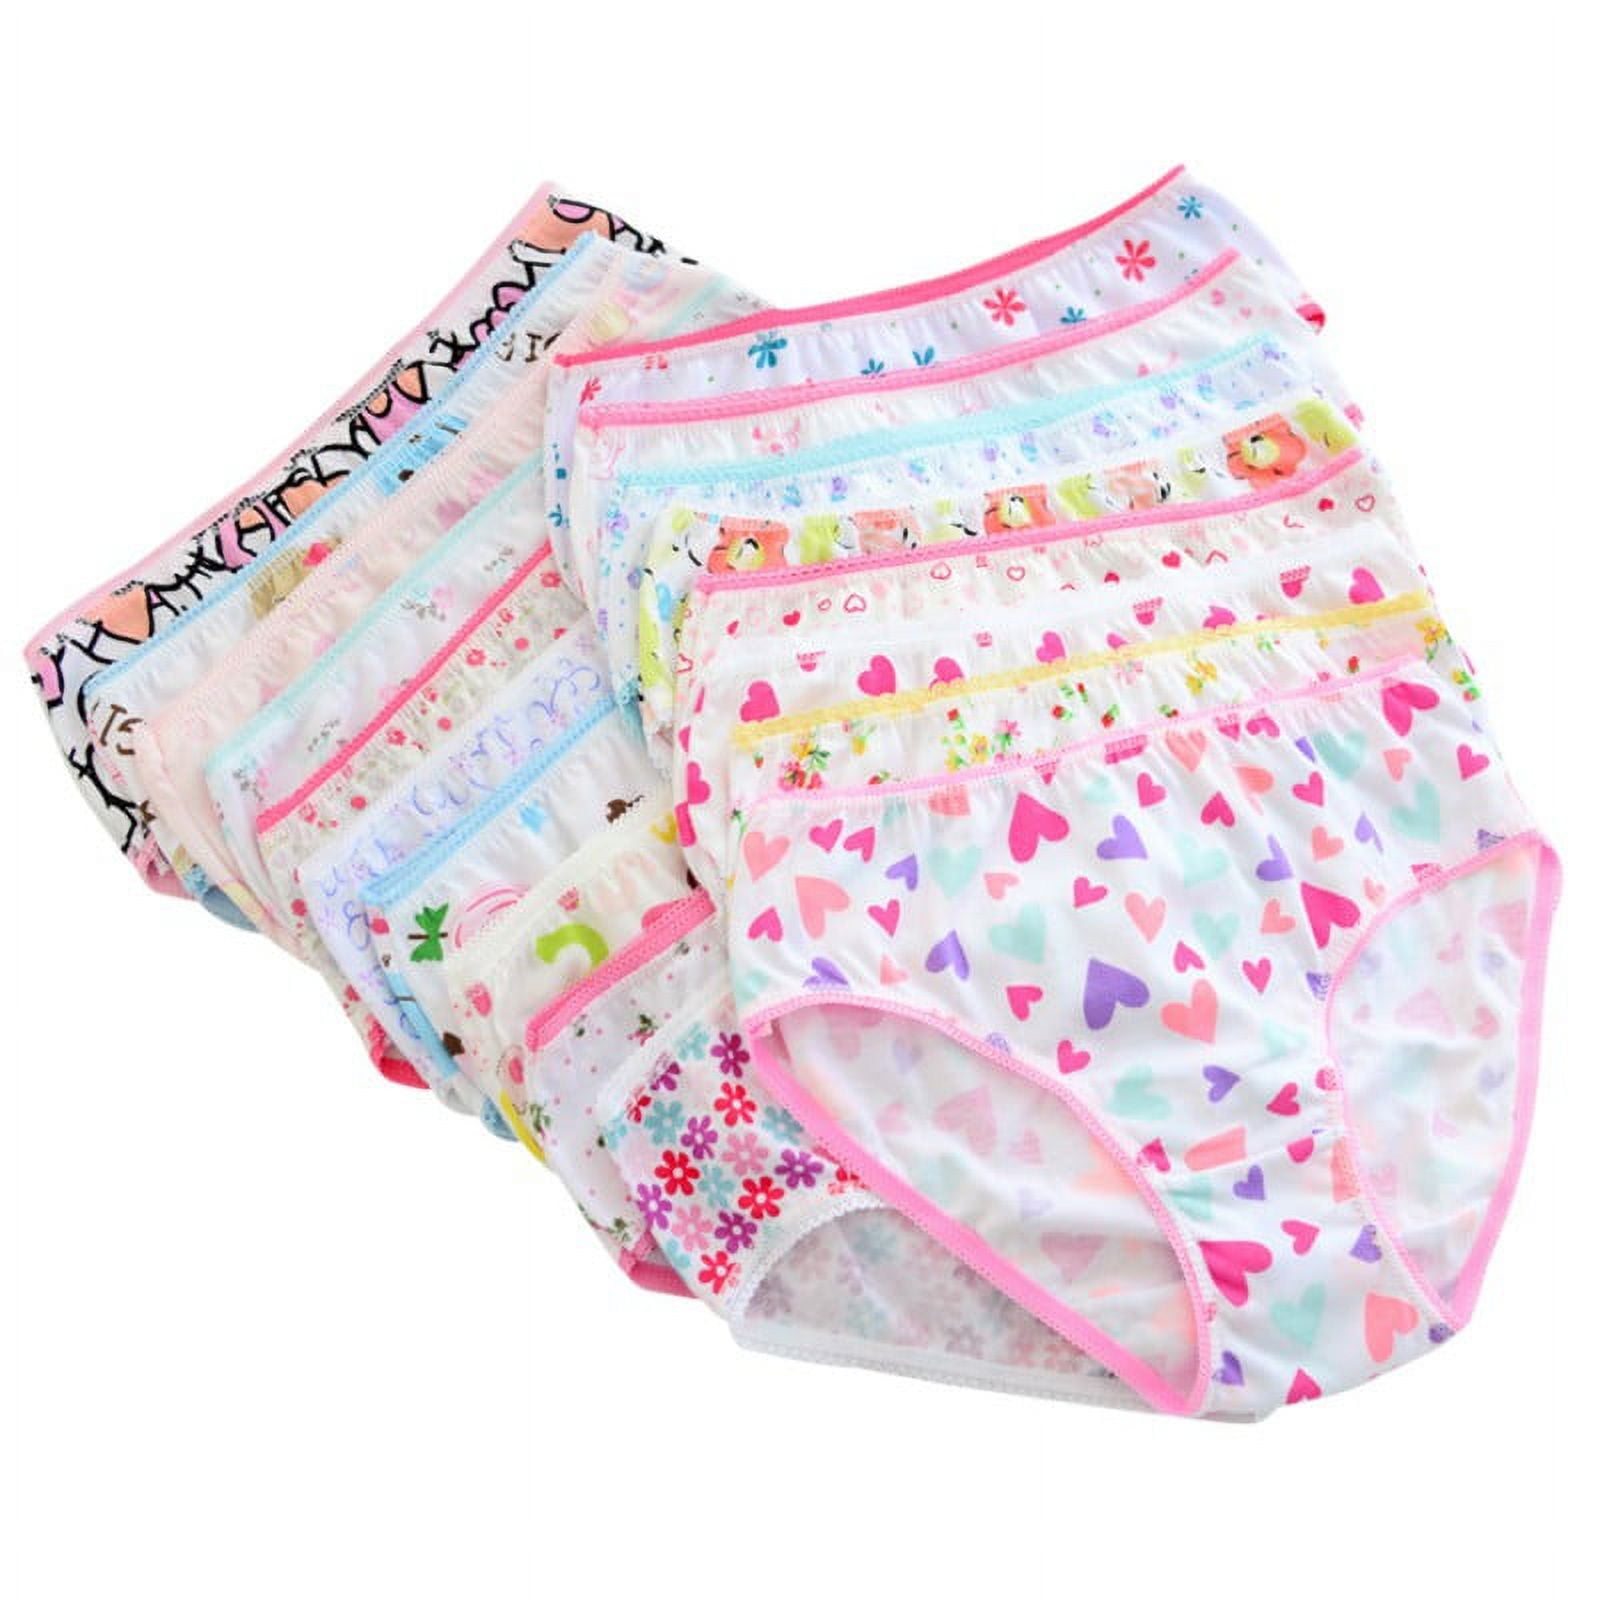 9 Packs Toddler Little Girls Kids Underwear Cotton Briefs Size 2T 3T 4T 5T  6T